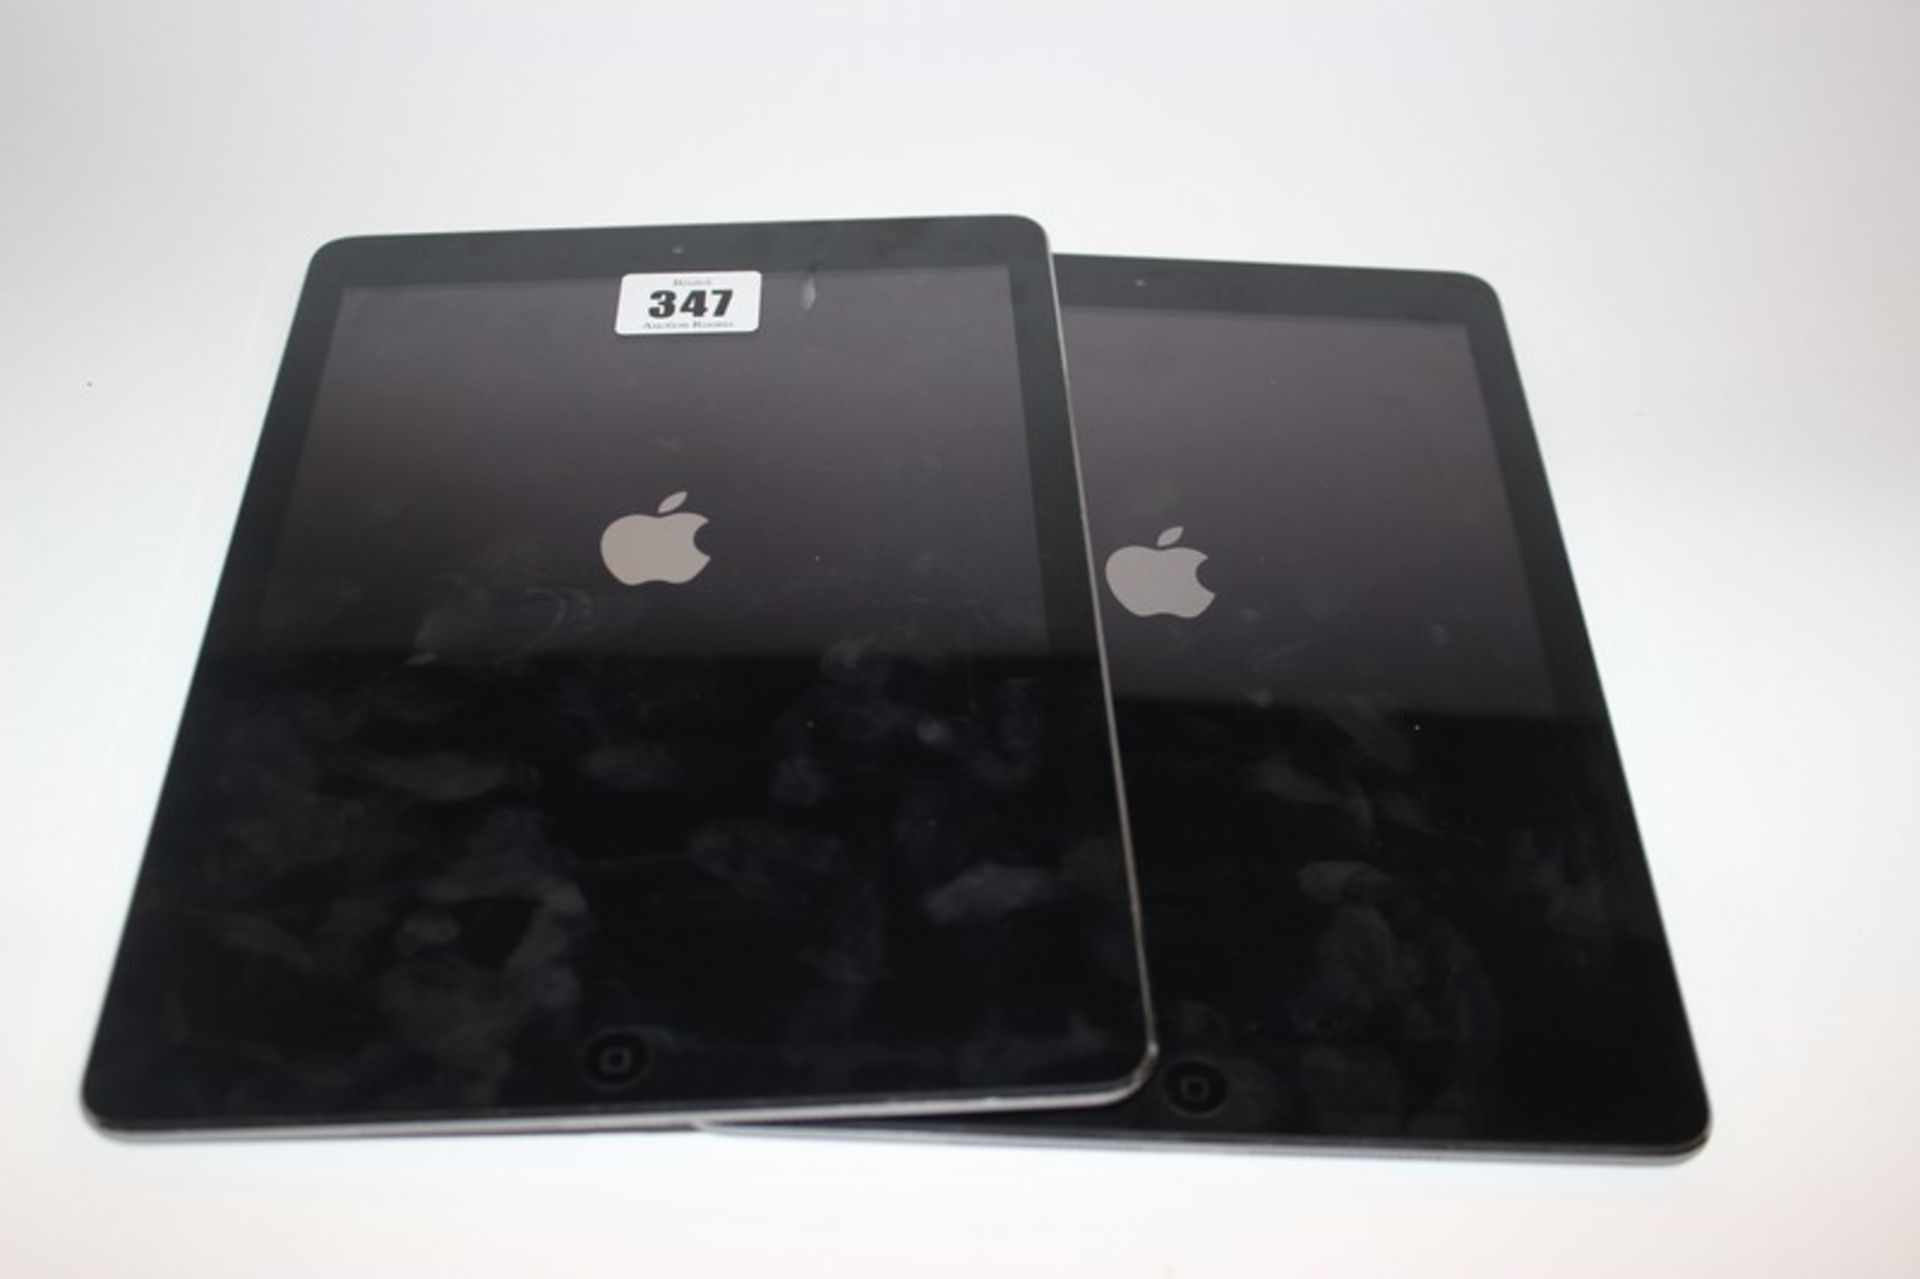 An iPad 32gb A1474 serial: DMPMQJTQFK11 and iPad 32gb A1474 serial: DMQLK2VEFK11 (Both activation